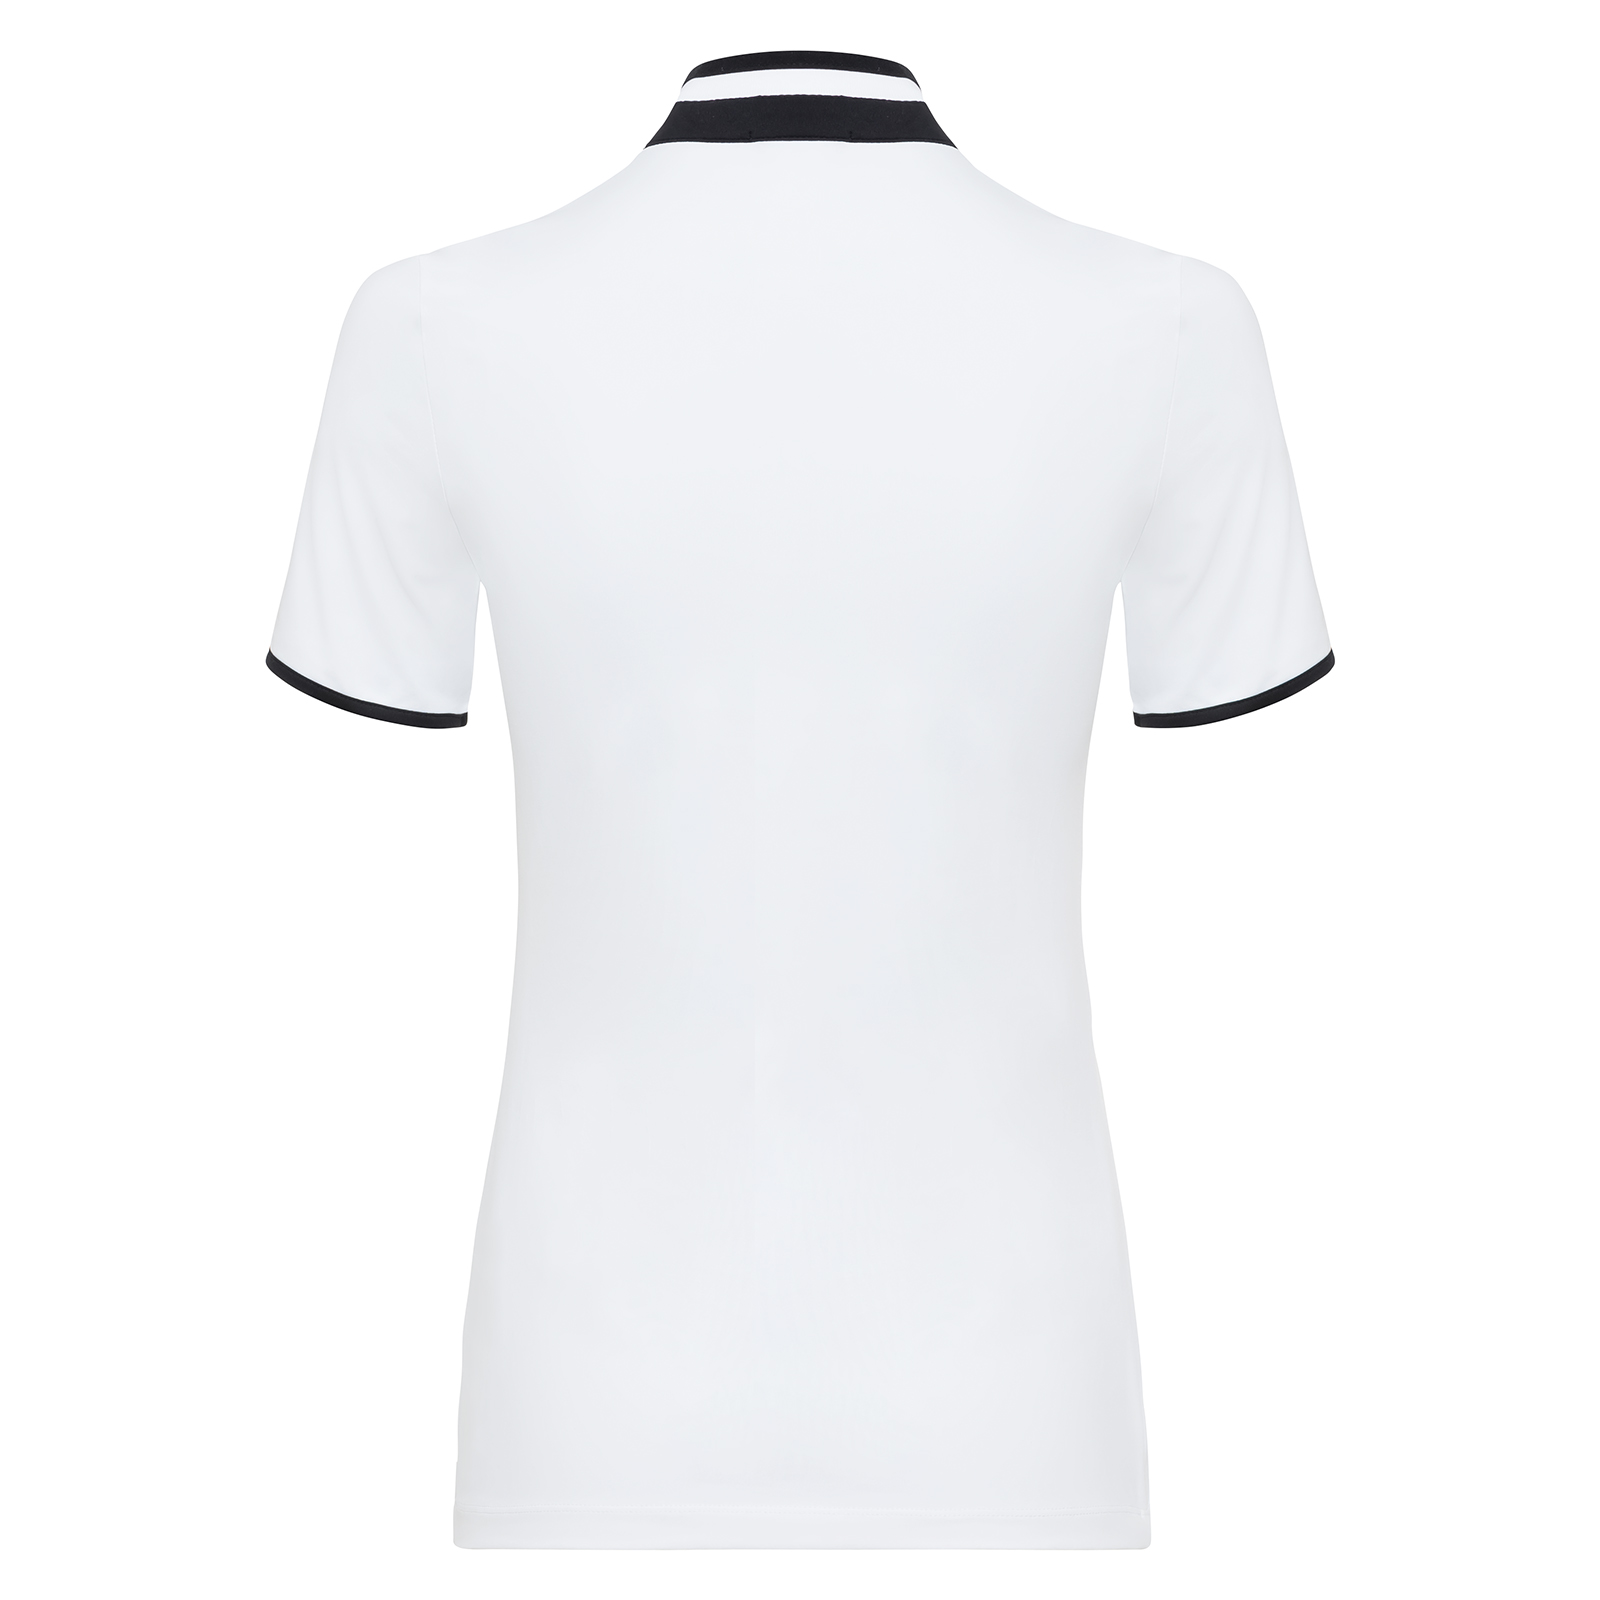 Golfino The Mariana Short Sleeve Layer Optic White